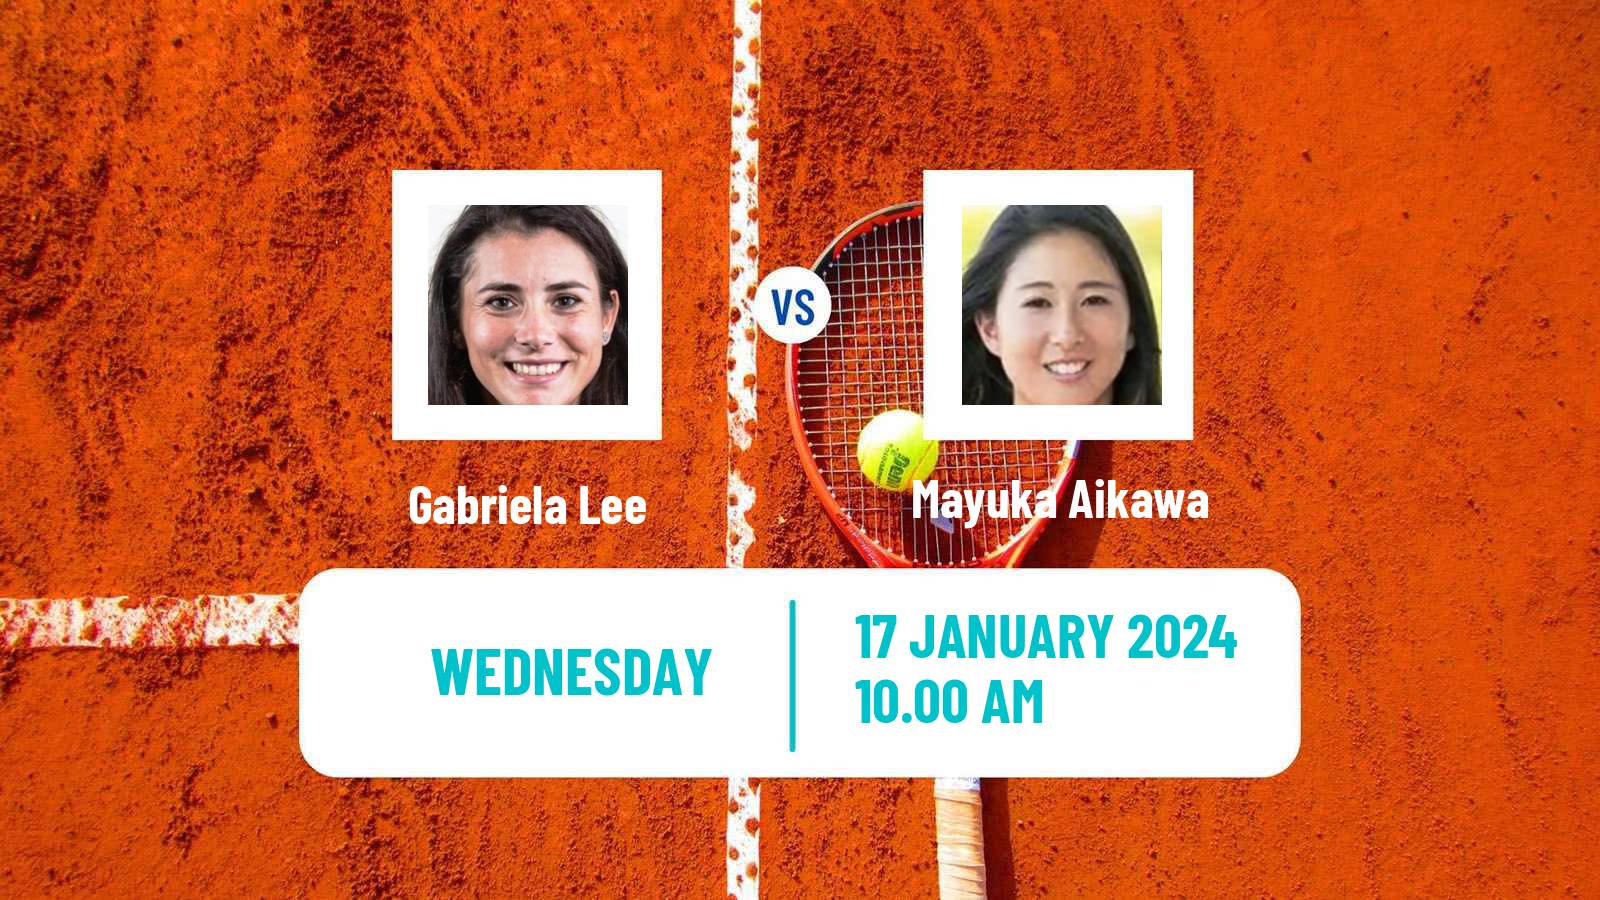 Tennis ITF W35 Naples Fl 2 Women Gabriela Lee - Mayuka Aikawa